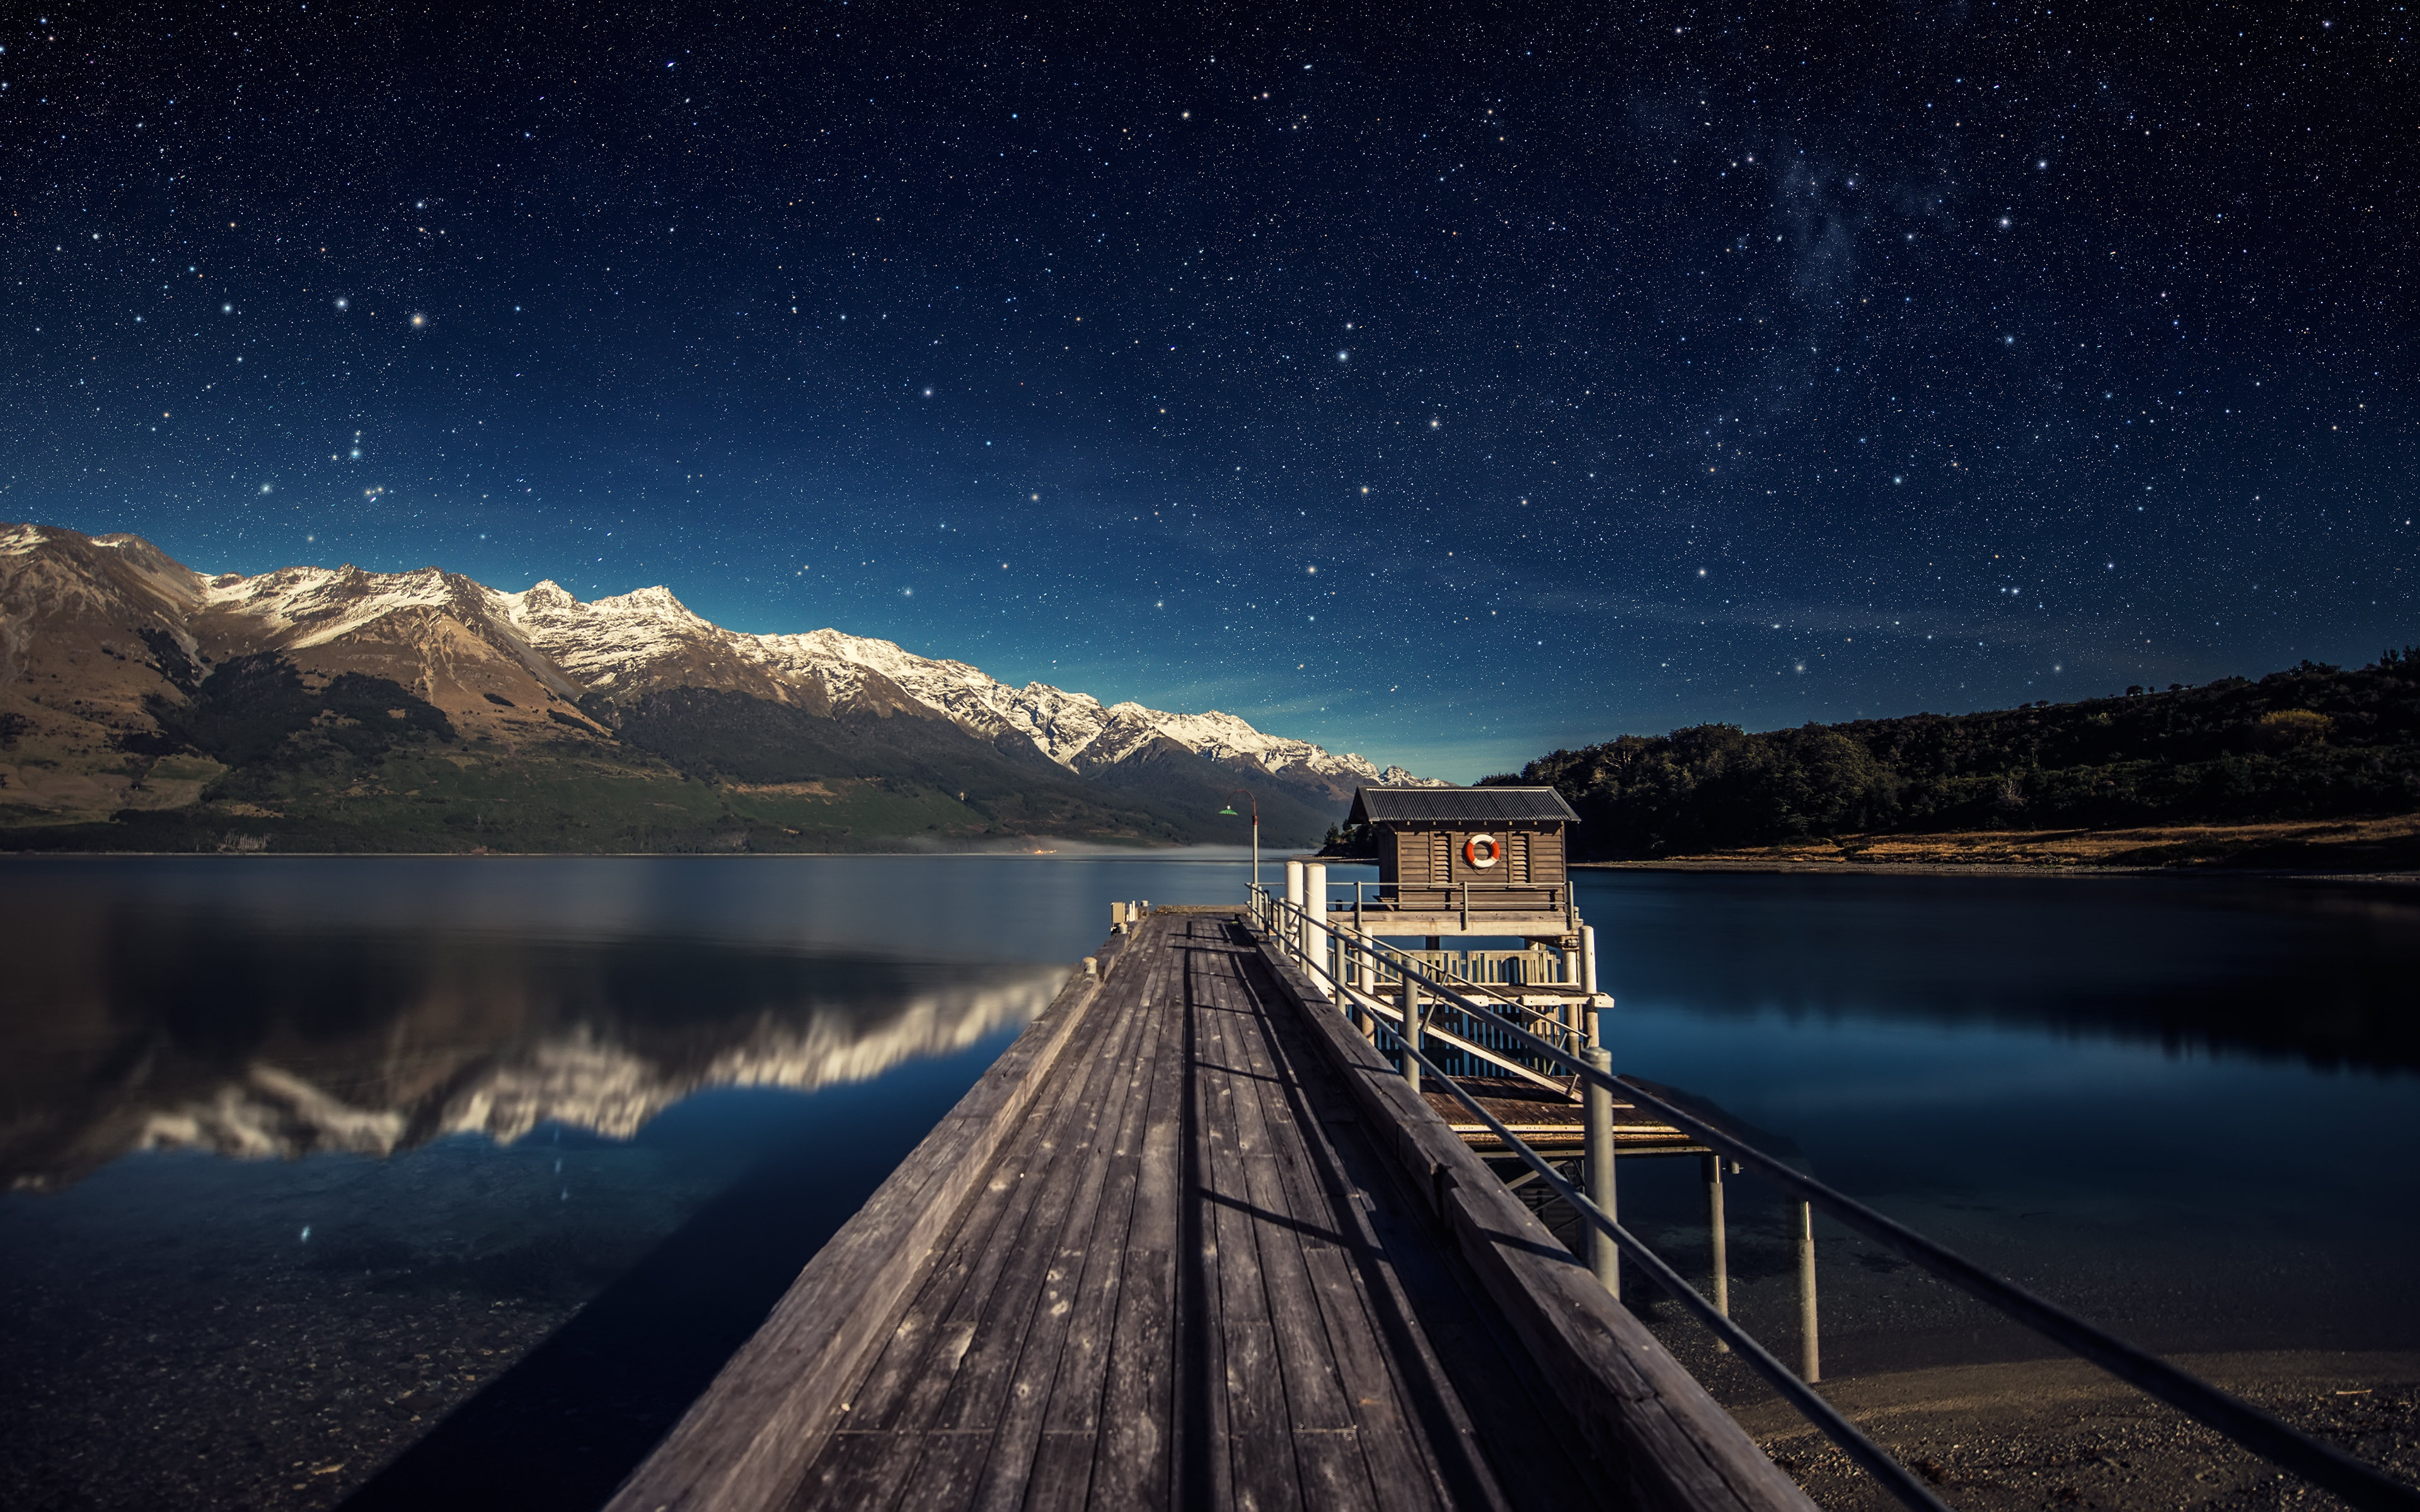 Обои на телефон на большой экран. Новозеландия звезды озеро. Ночной пейзаж. Красивые обои на рабочий столэ. Горы озеро ночь.